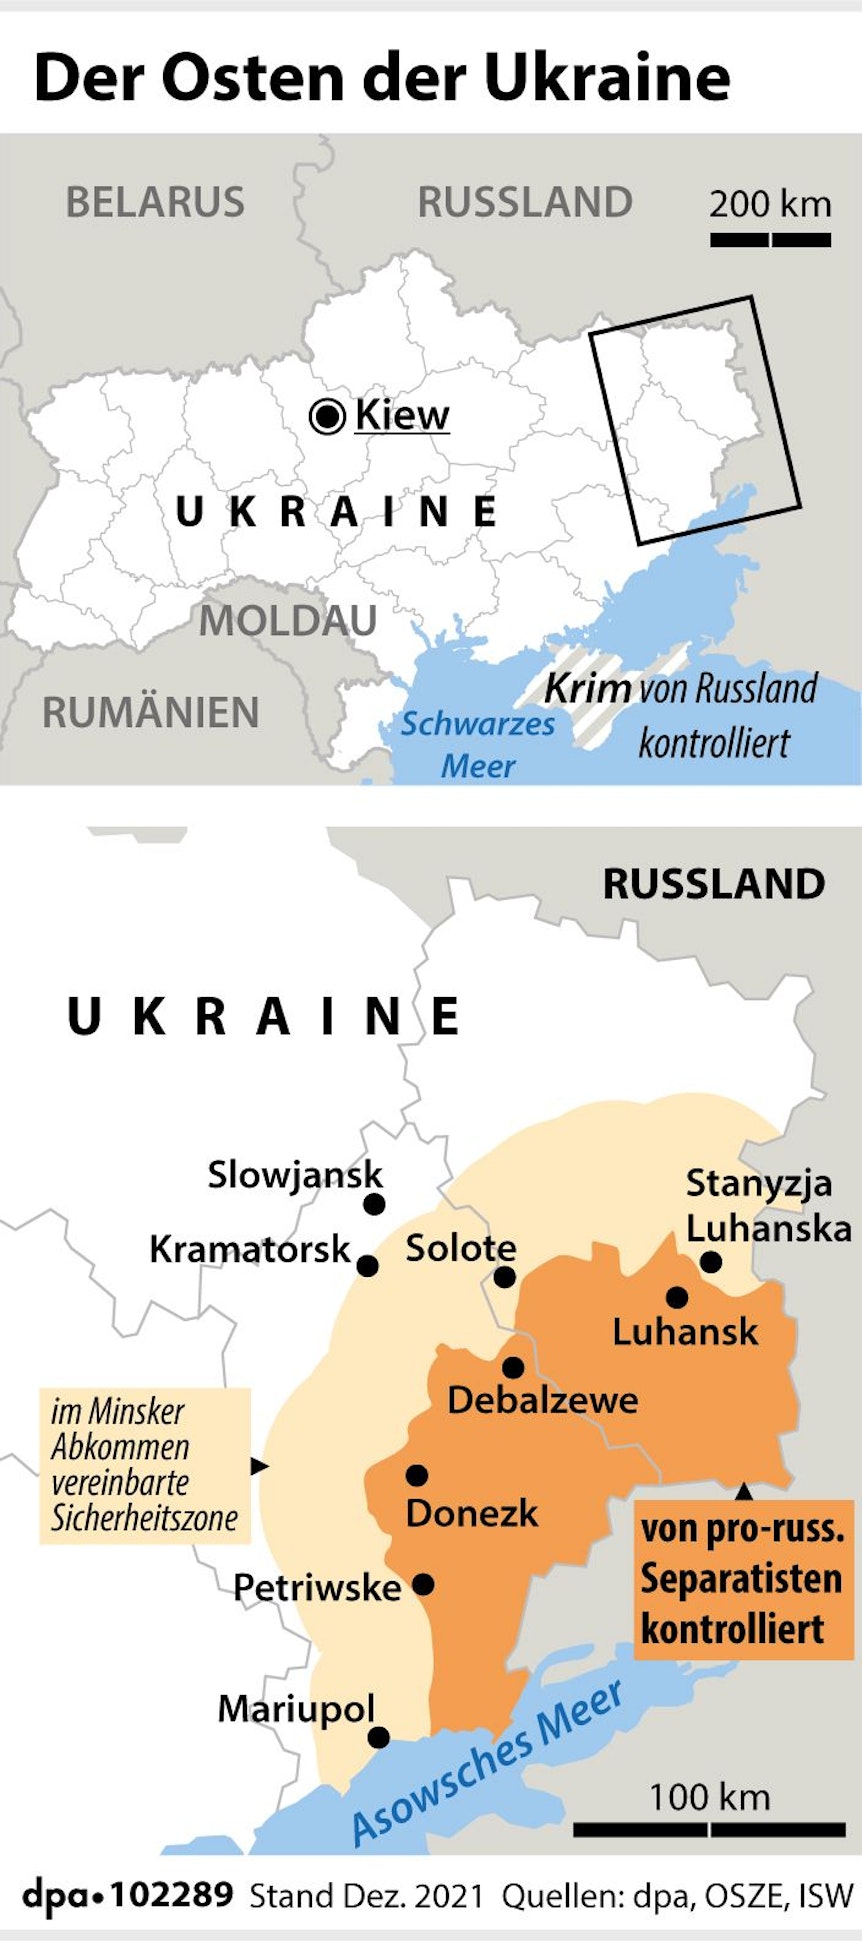 Die Karte zeigt die Ostukraine mit dem von prorussischen Separatisten kontrollierten Gebiet.